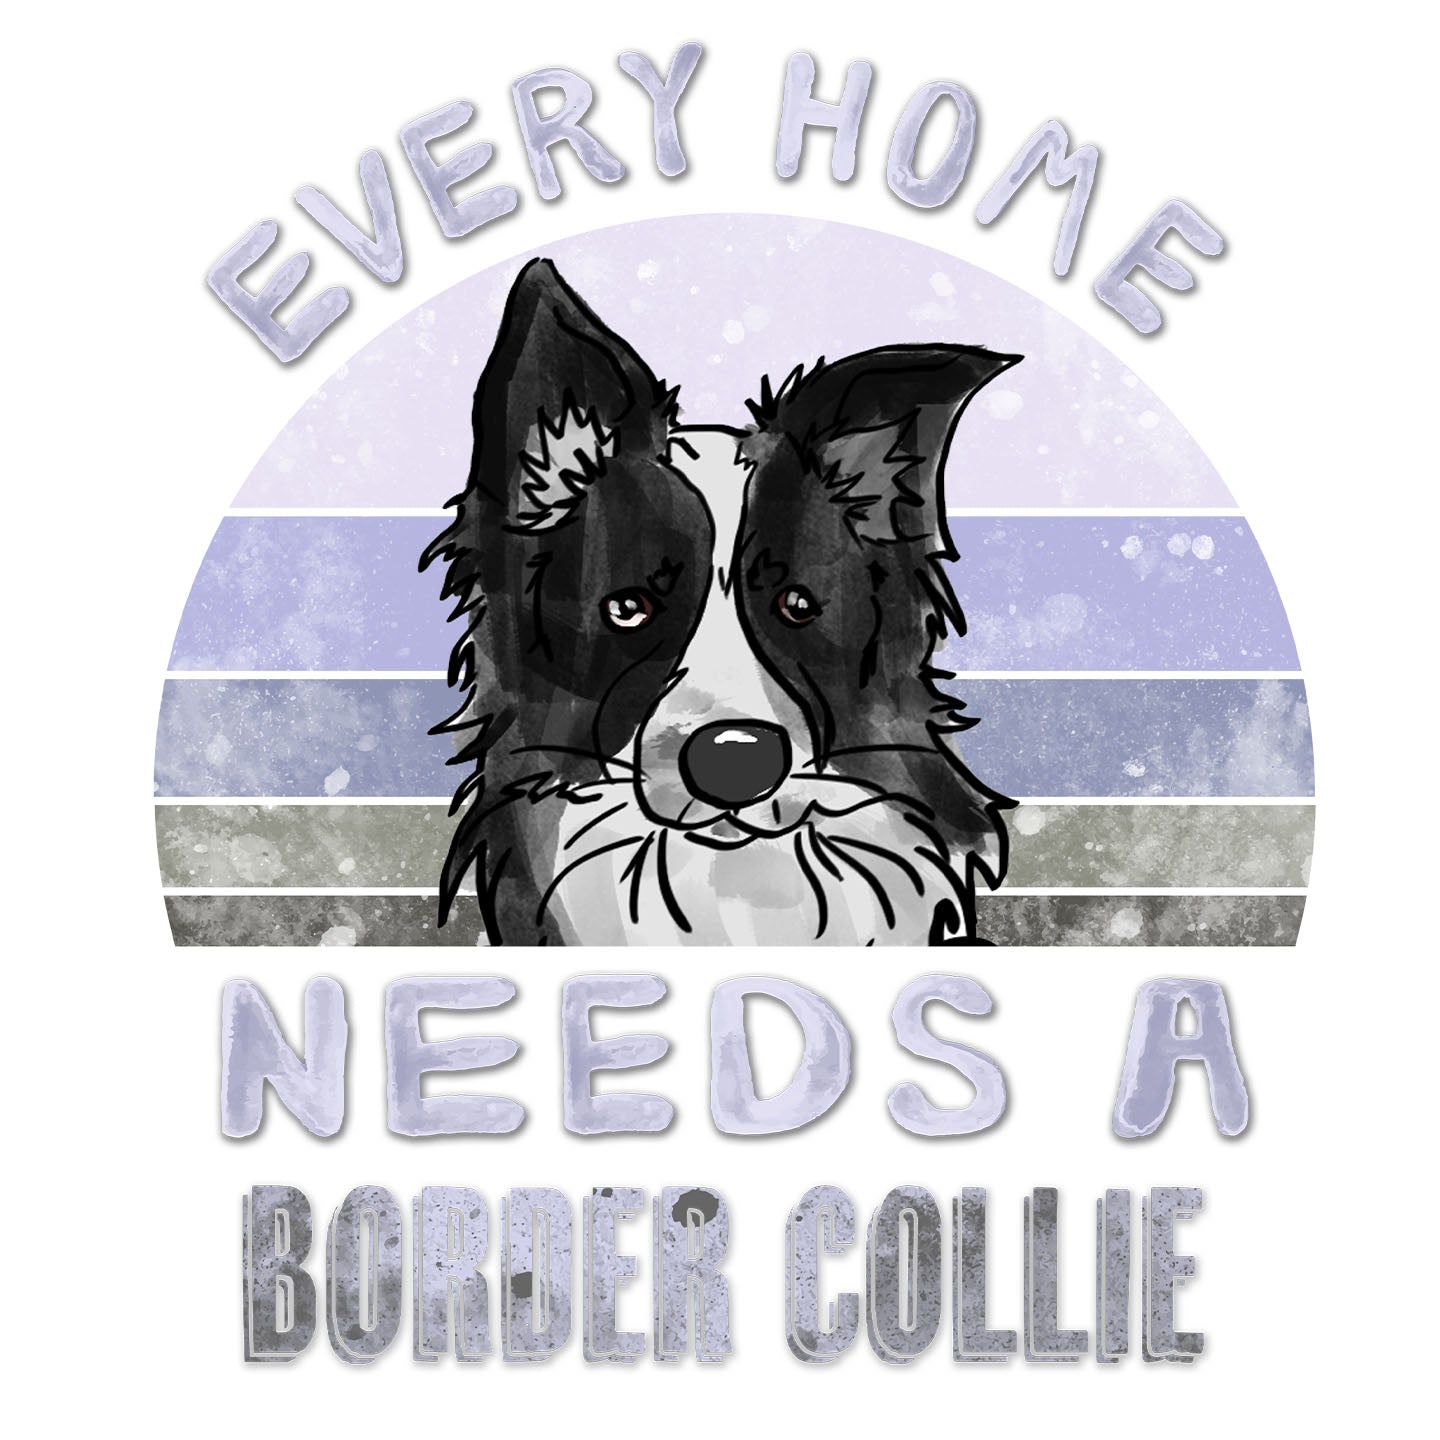 Every Home Needs a Border Collie - Women's V-Neck T-Shirt